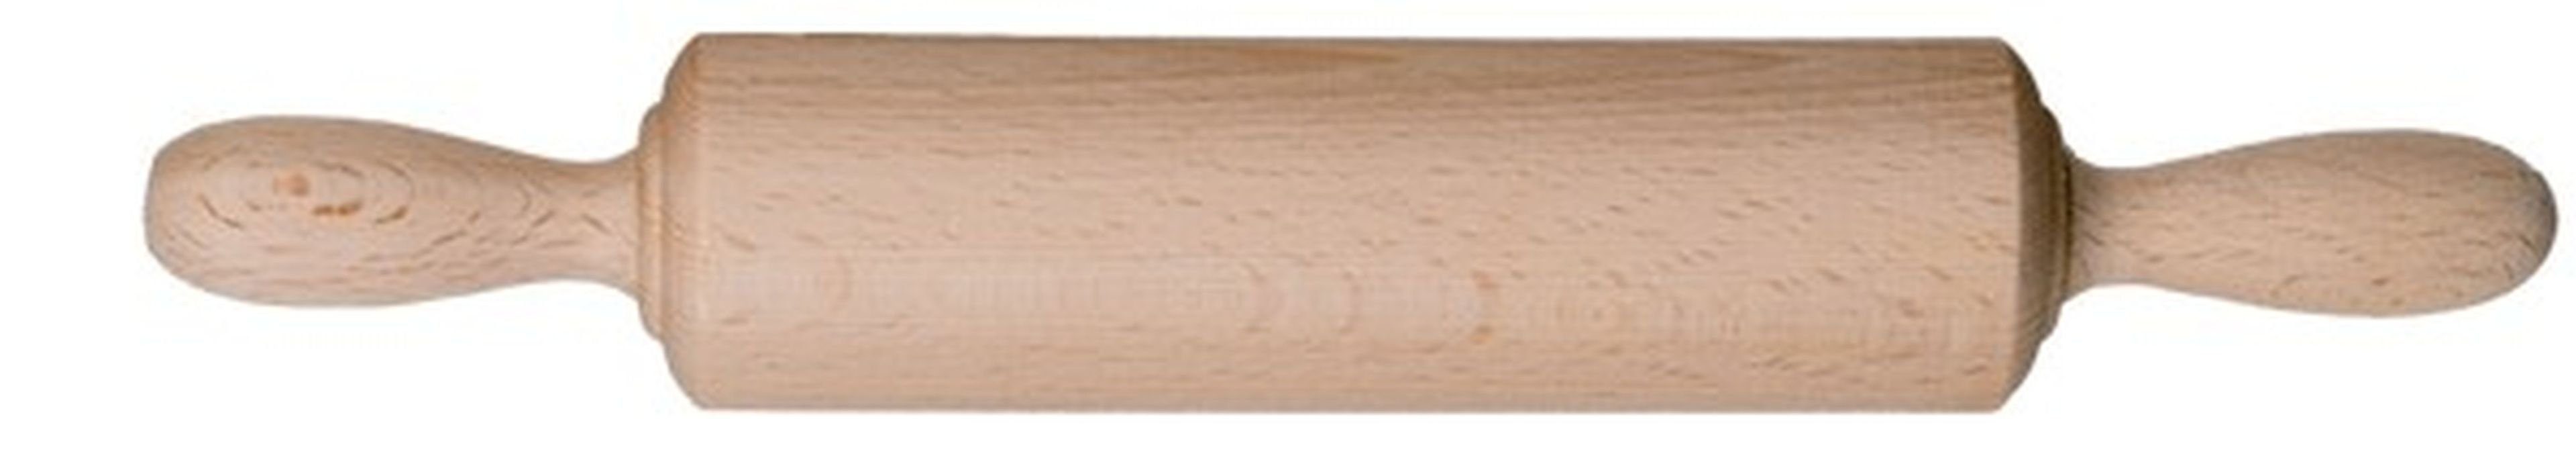 Gravidus Teigroller Teigrolle ohne 25 Nudelholz für Kinder cm Holz Achse